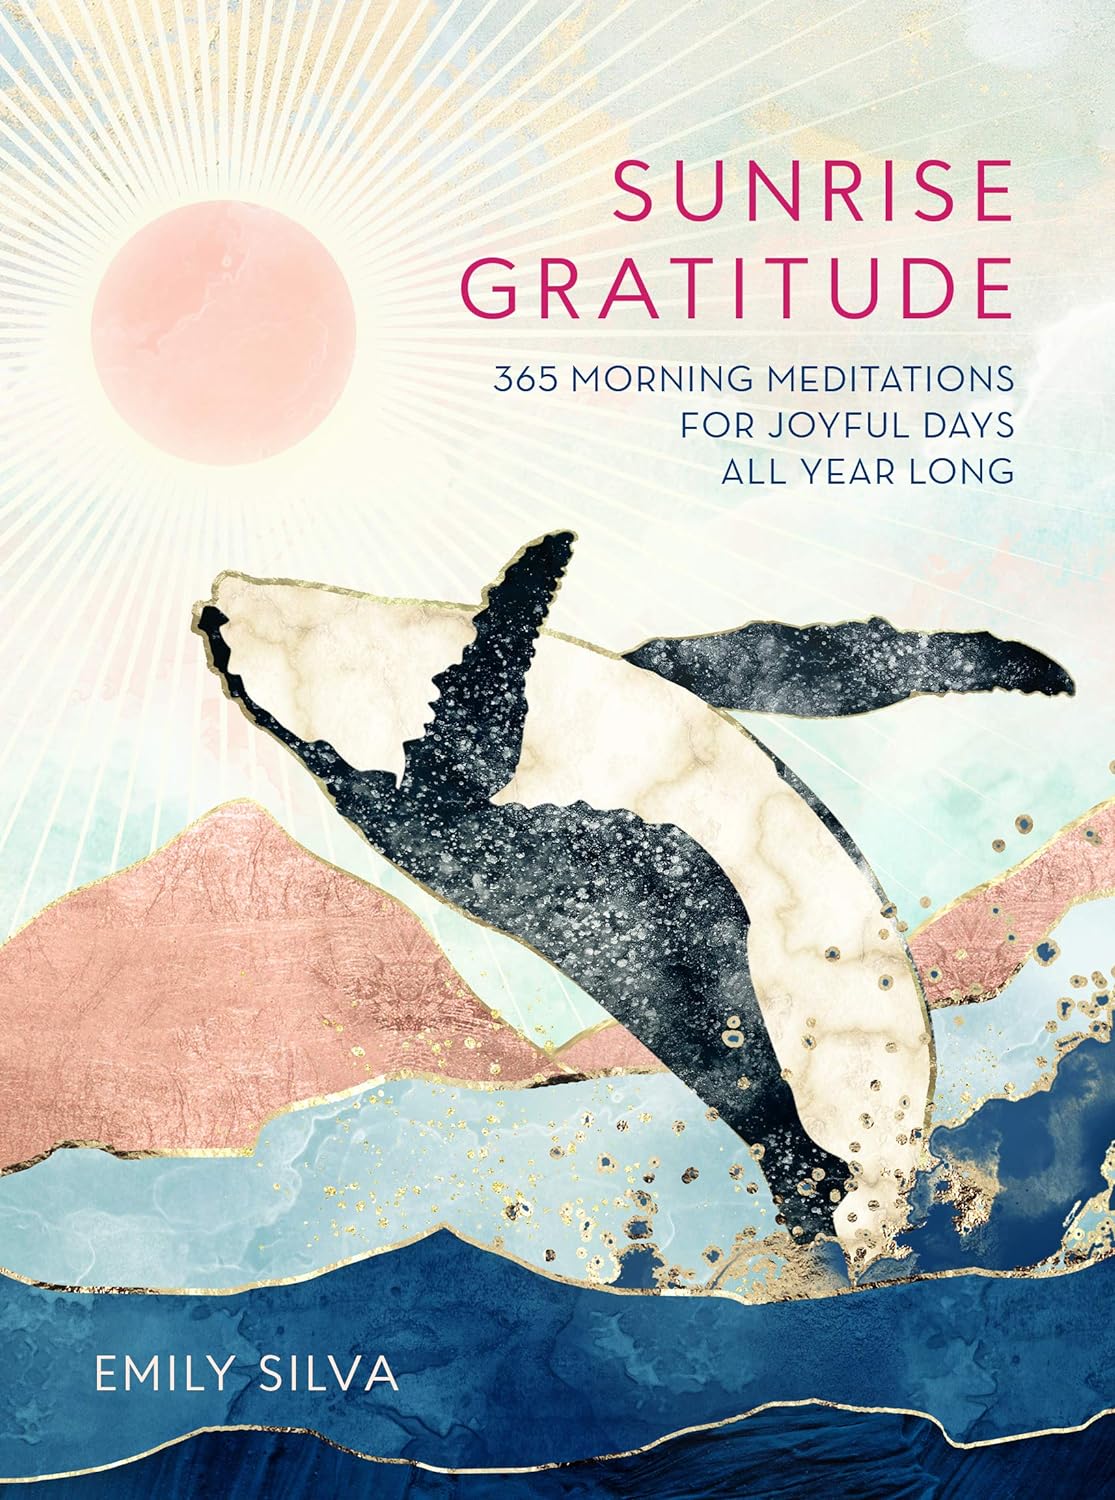 morning & evening gratitude meditations